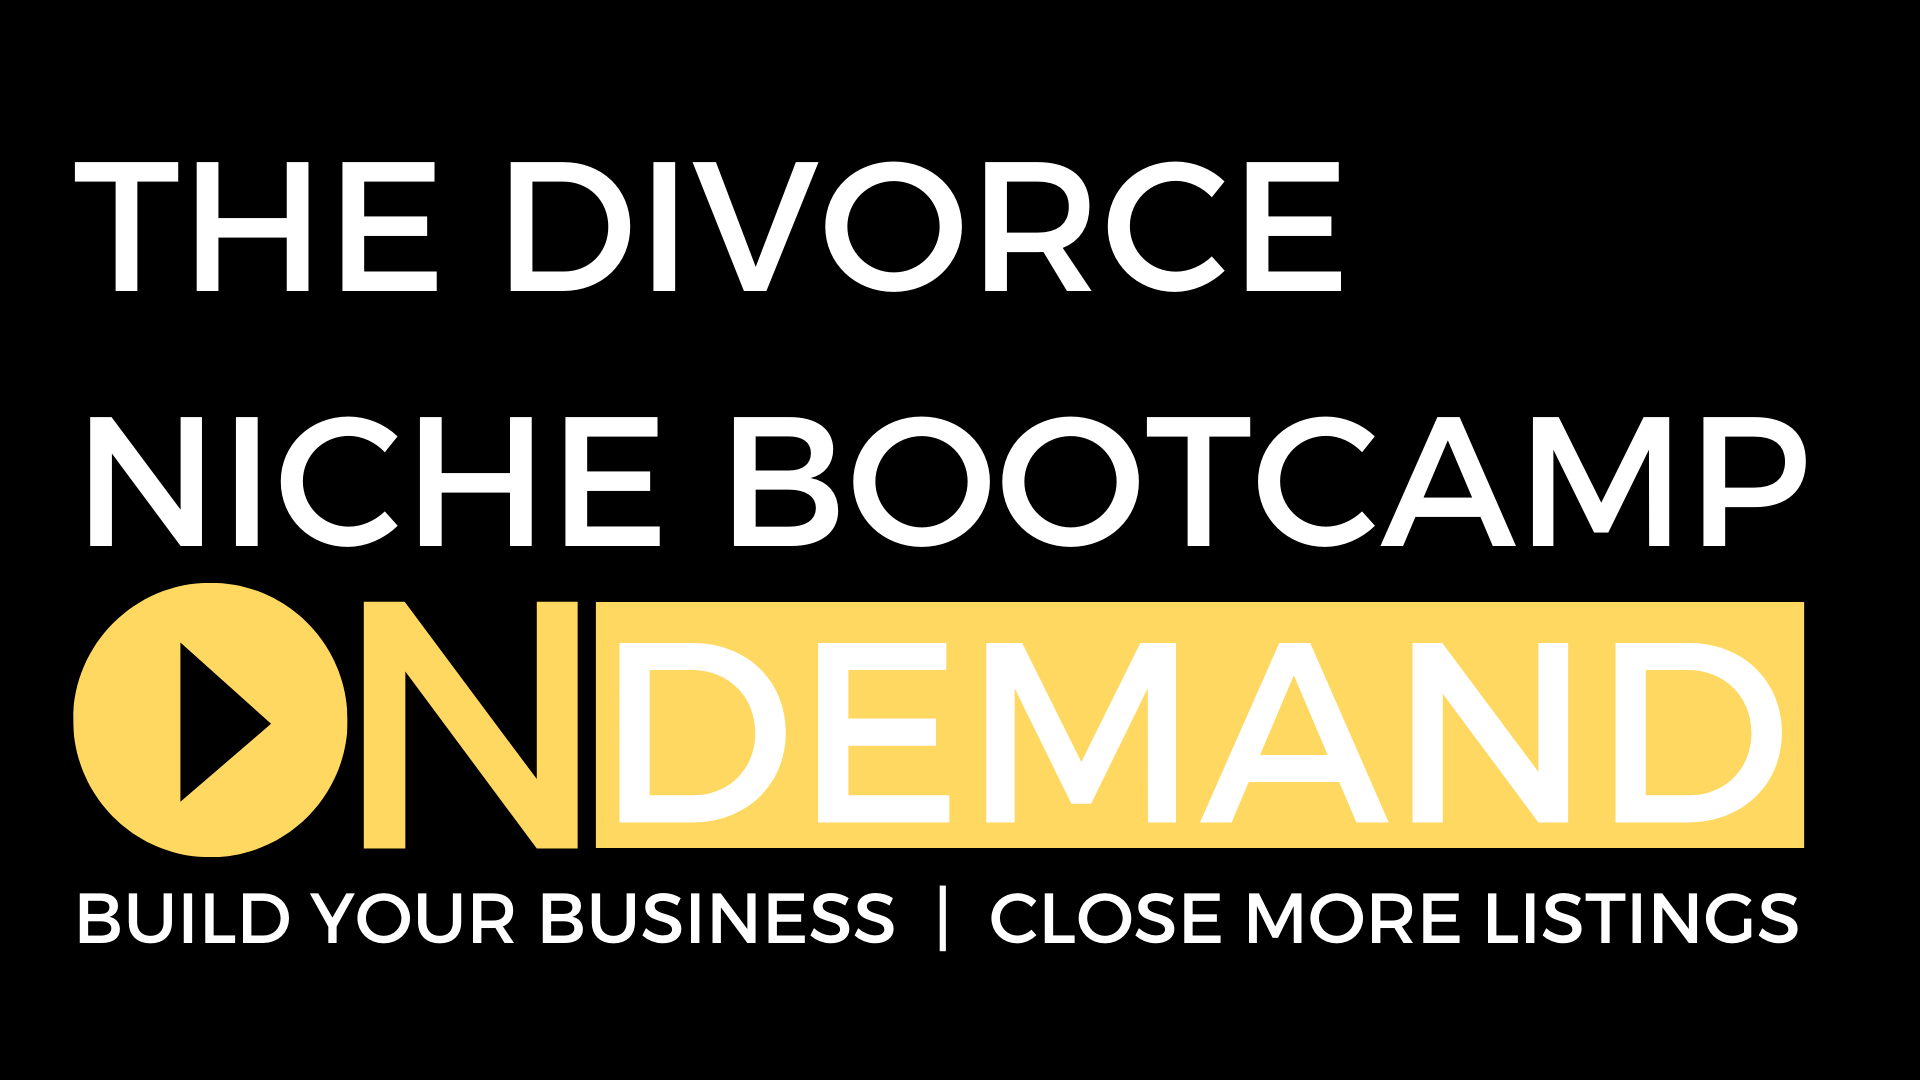 The Divorce Niche Bootcamp logo